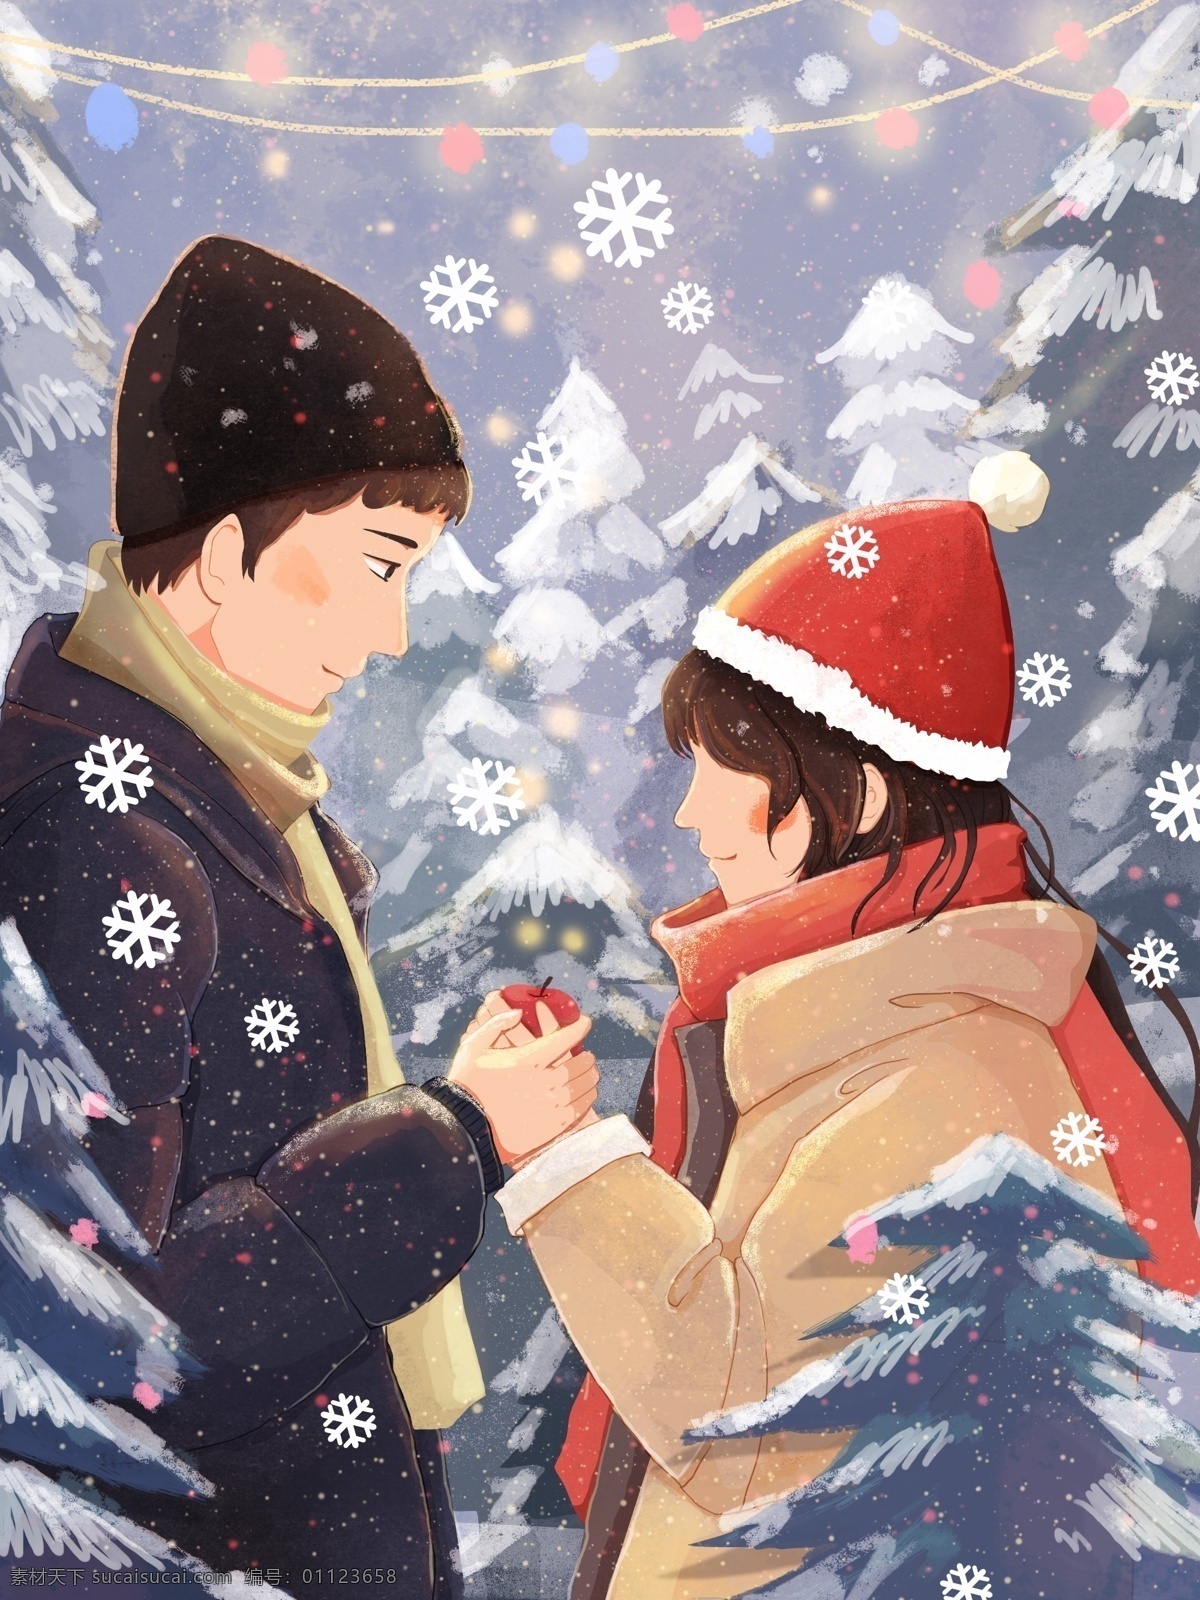 原创 插画 冬季 圣诞节 情侣 下雪 壁纸 森林场景 彩灯